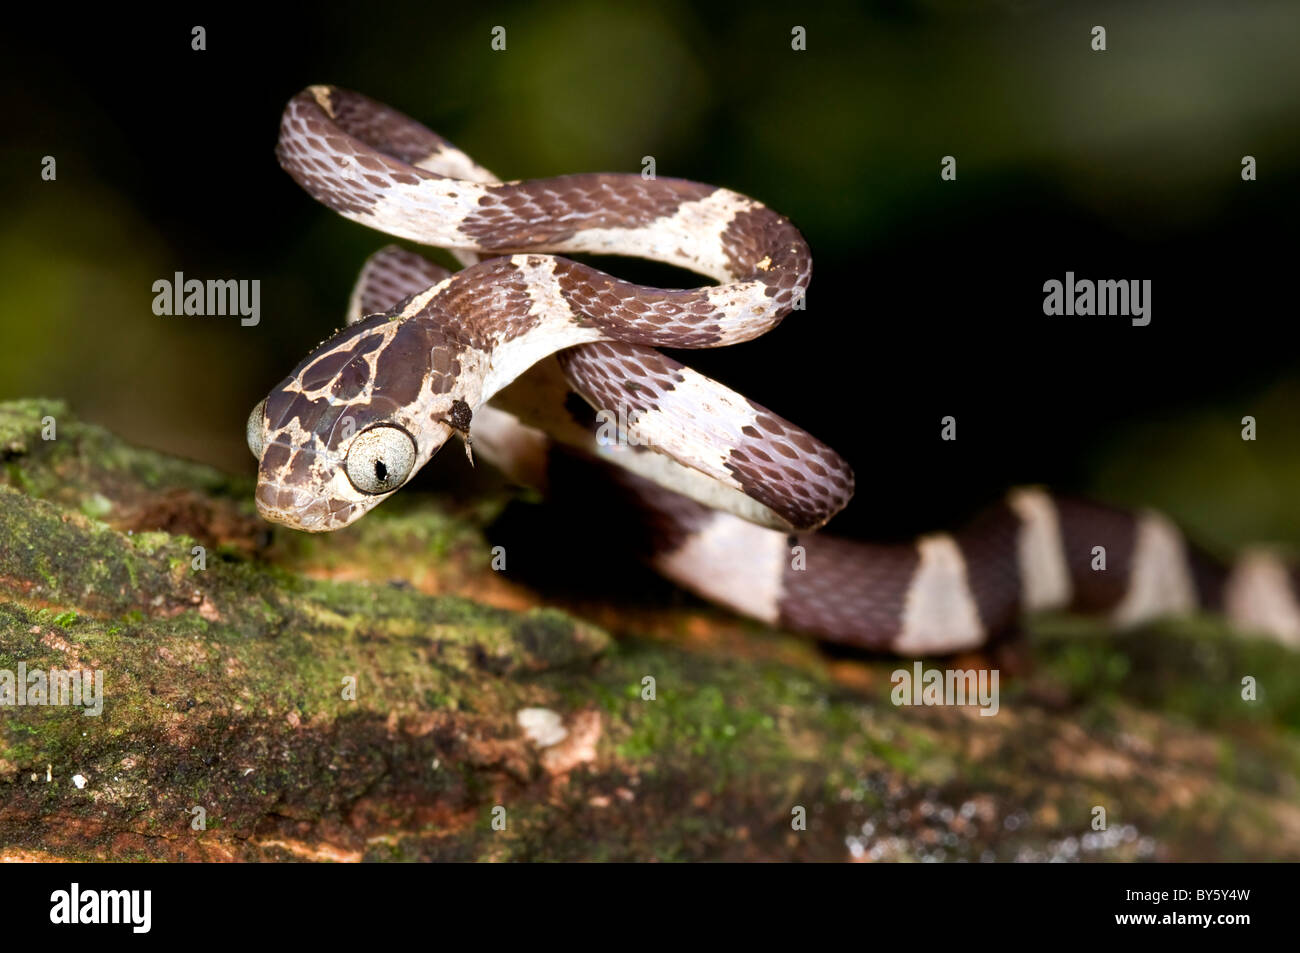 Small 'Imantodes cenchoa' snake from ecuador Stock Photo